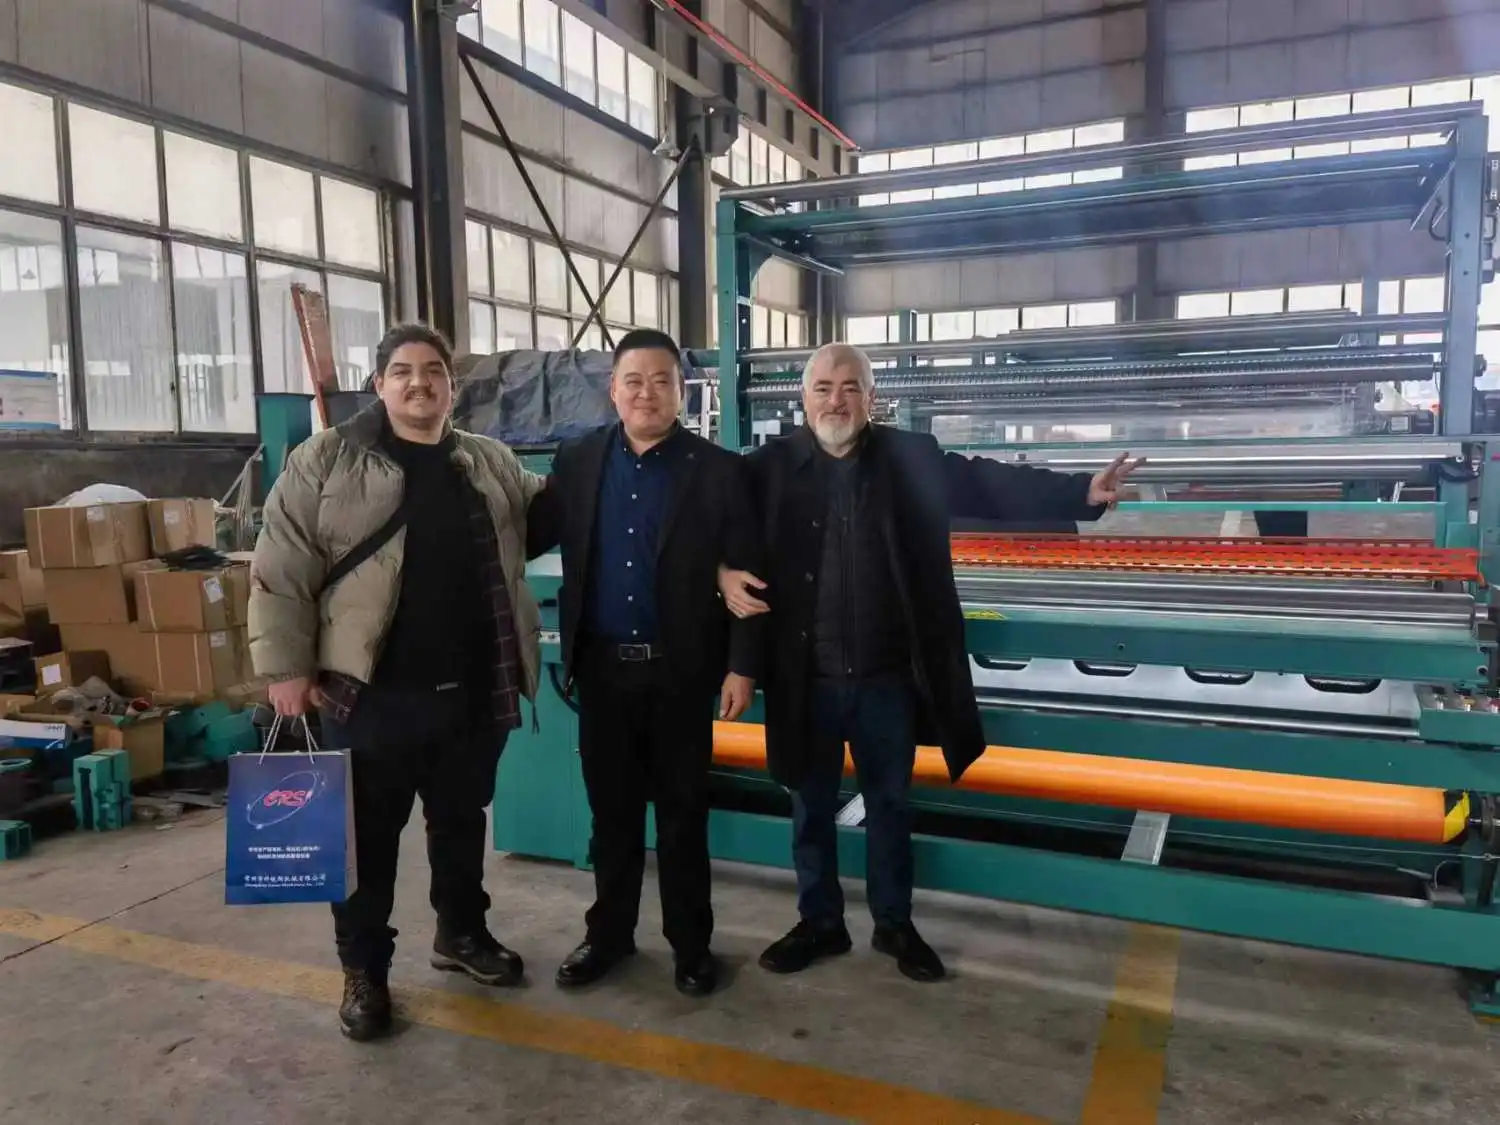 Türkische Kunden besuchen die Fabrik, um Textilmaschinen zu erkunden